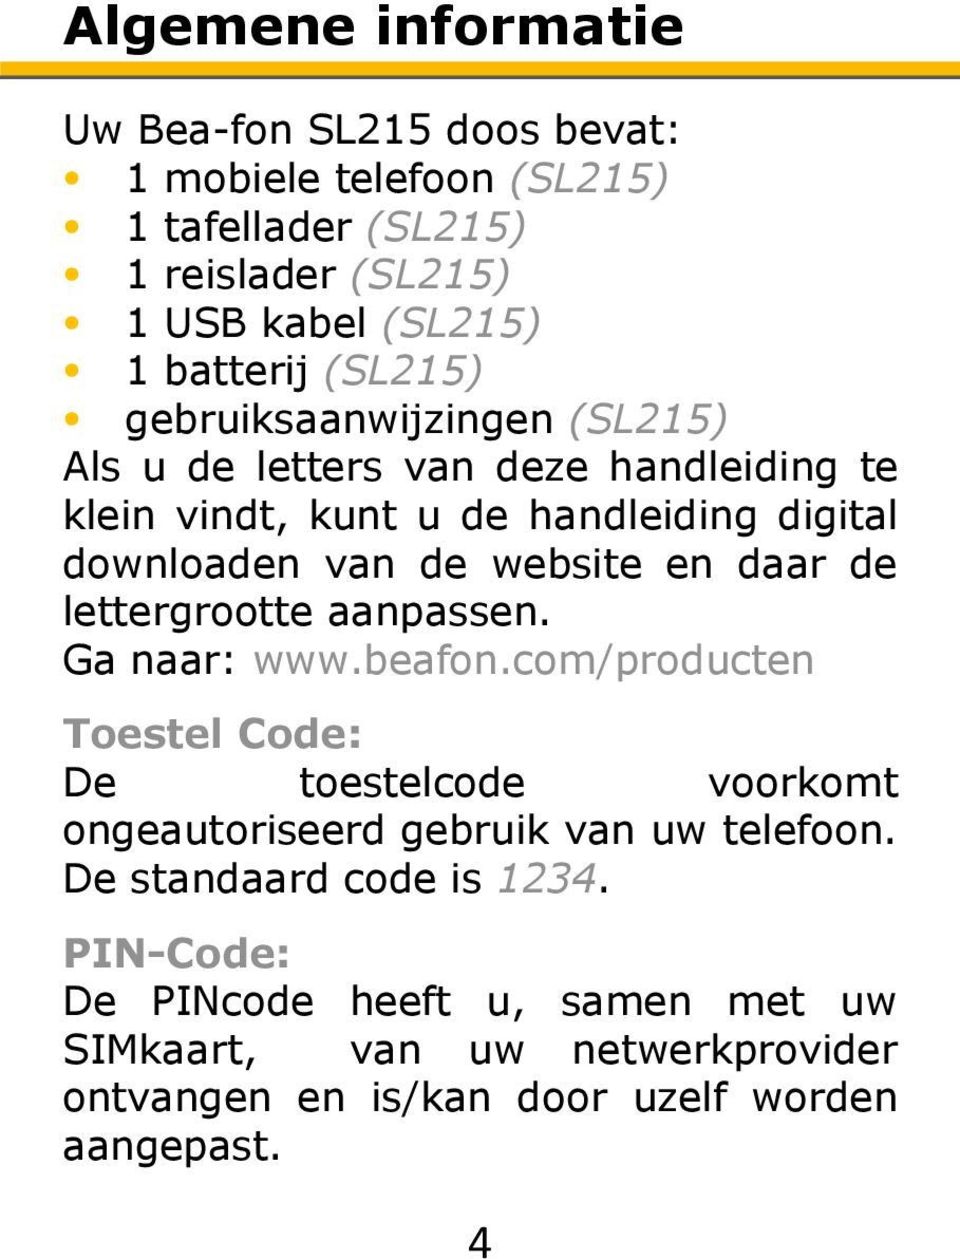 daar de lettergrootte aanpassen. Ga naar: www.beafon.com/producten Toestel Code: De toestelcode voorkomt ongeautoriseerd gebruik van uw telefoon.